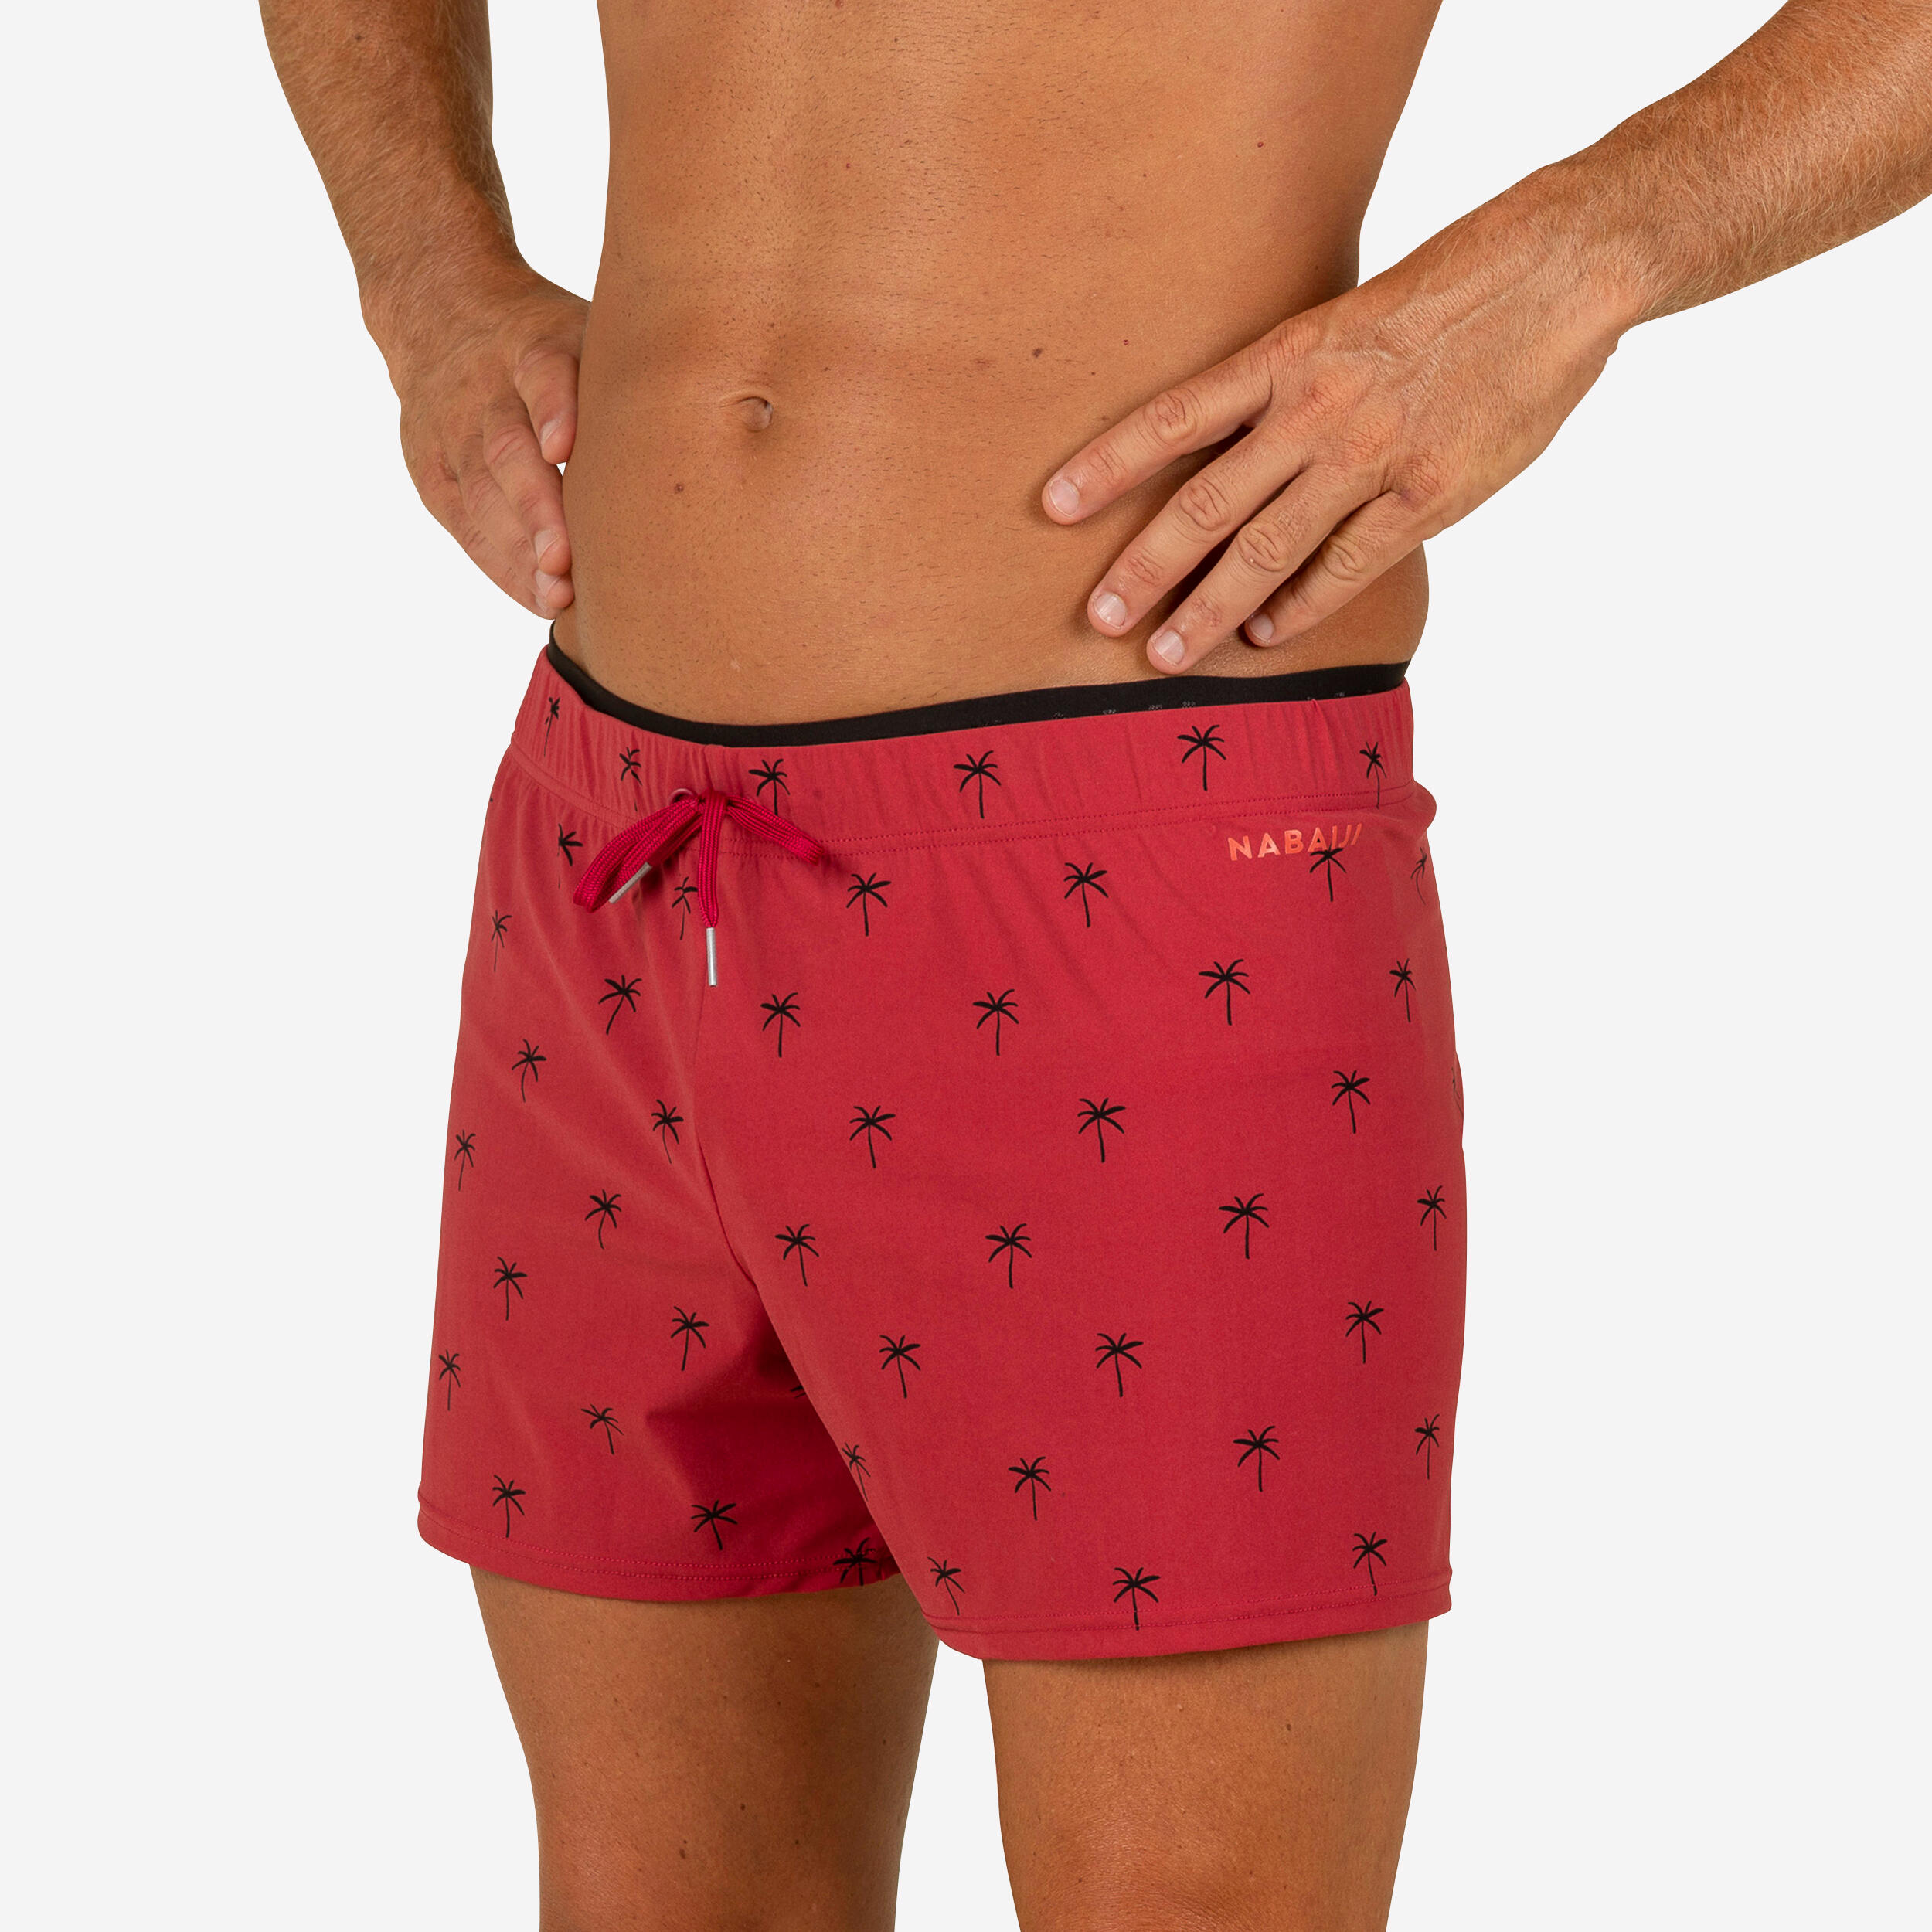 Men’s swimming shorts - Swimshort 100 Short - Cali Red Black 1/4